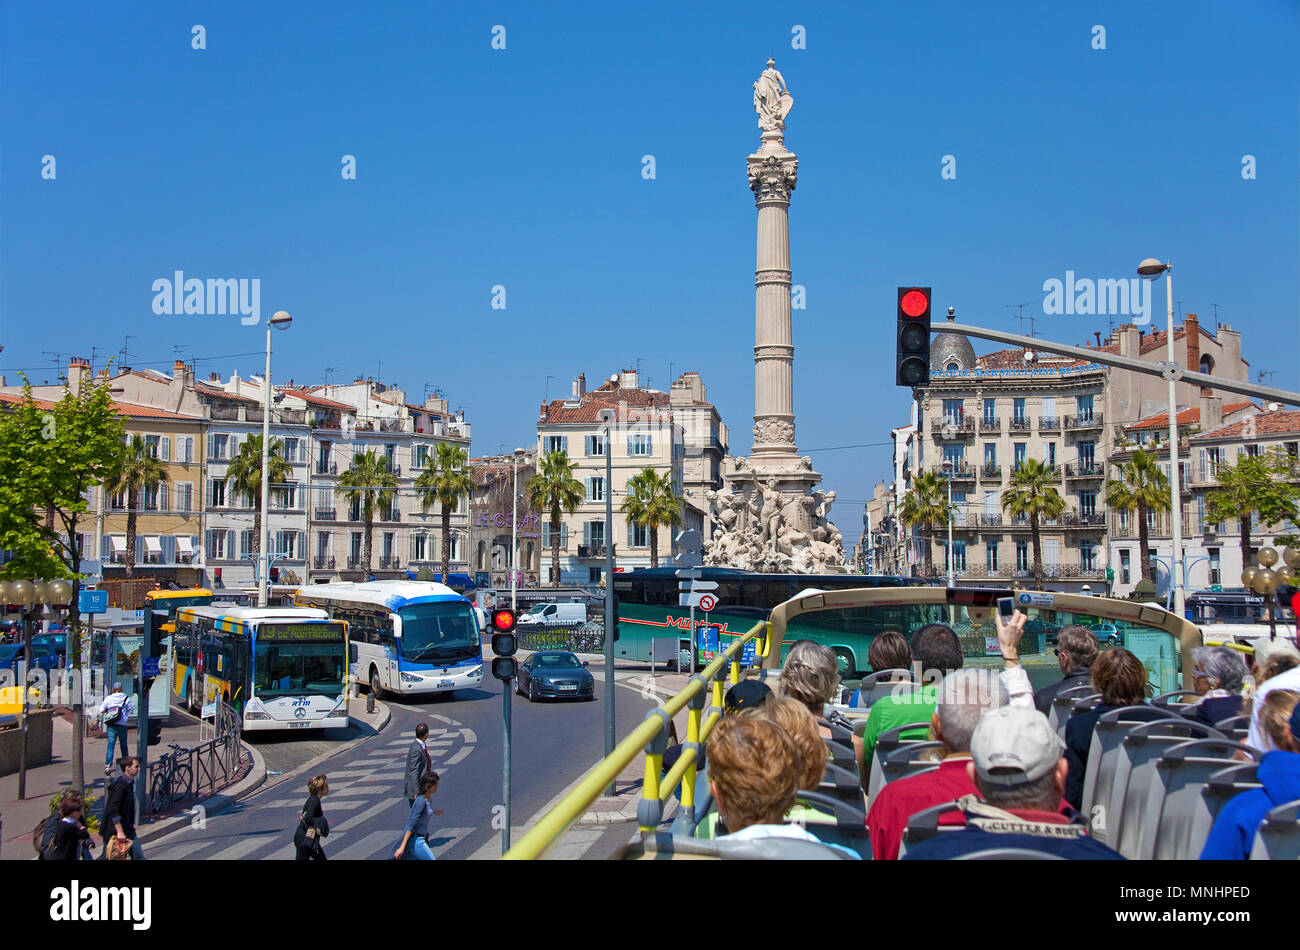 Sightsseing tour, Touristen in einem Bus an Ort Catellane, Marseille, Bouches-du-Rhône der Region Provence-Alpes-Côte d'Azur, Südfrankreich, Frankreich, Europa Stockfoto